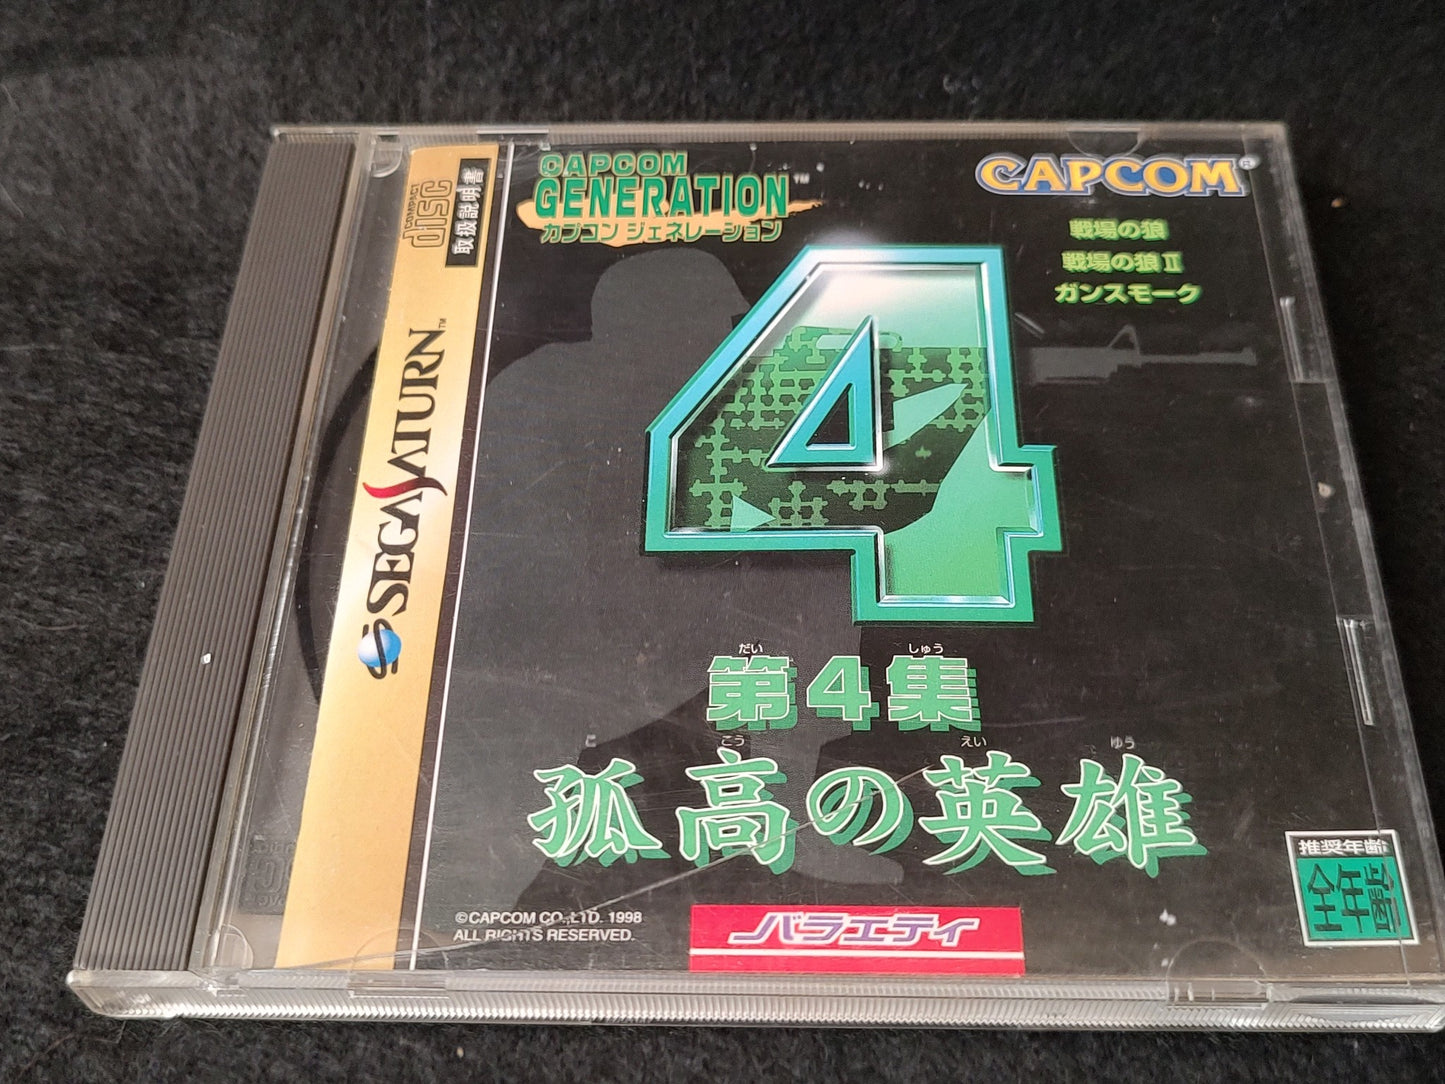 Capcom Generation 4 SEGA Saturn Game, Gamedisk, manual and Case, Working-g0111-